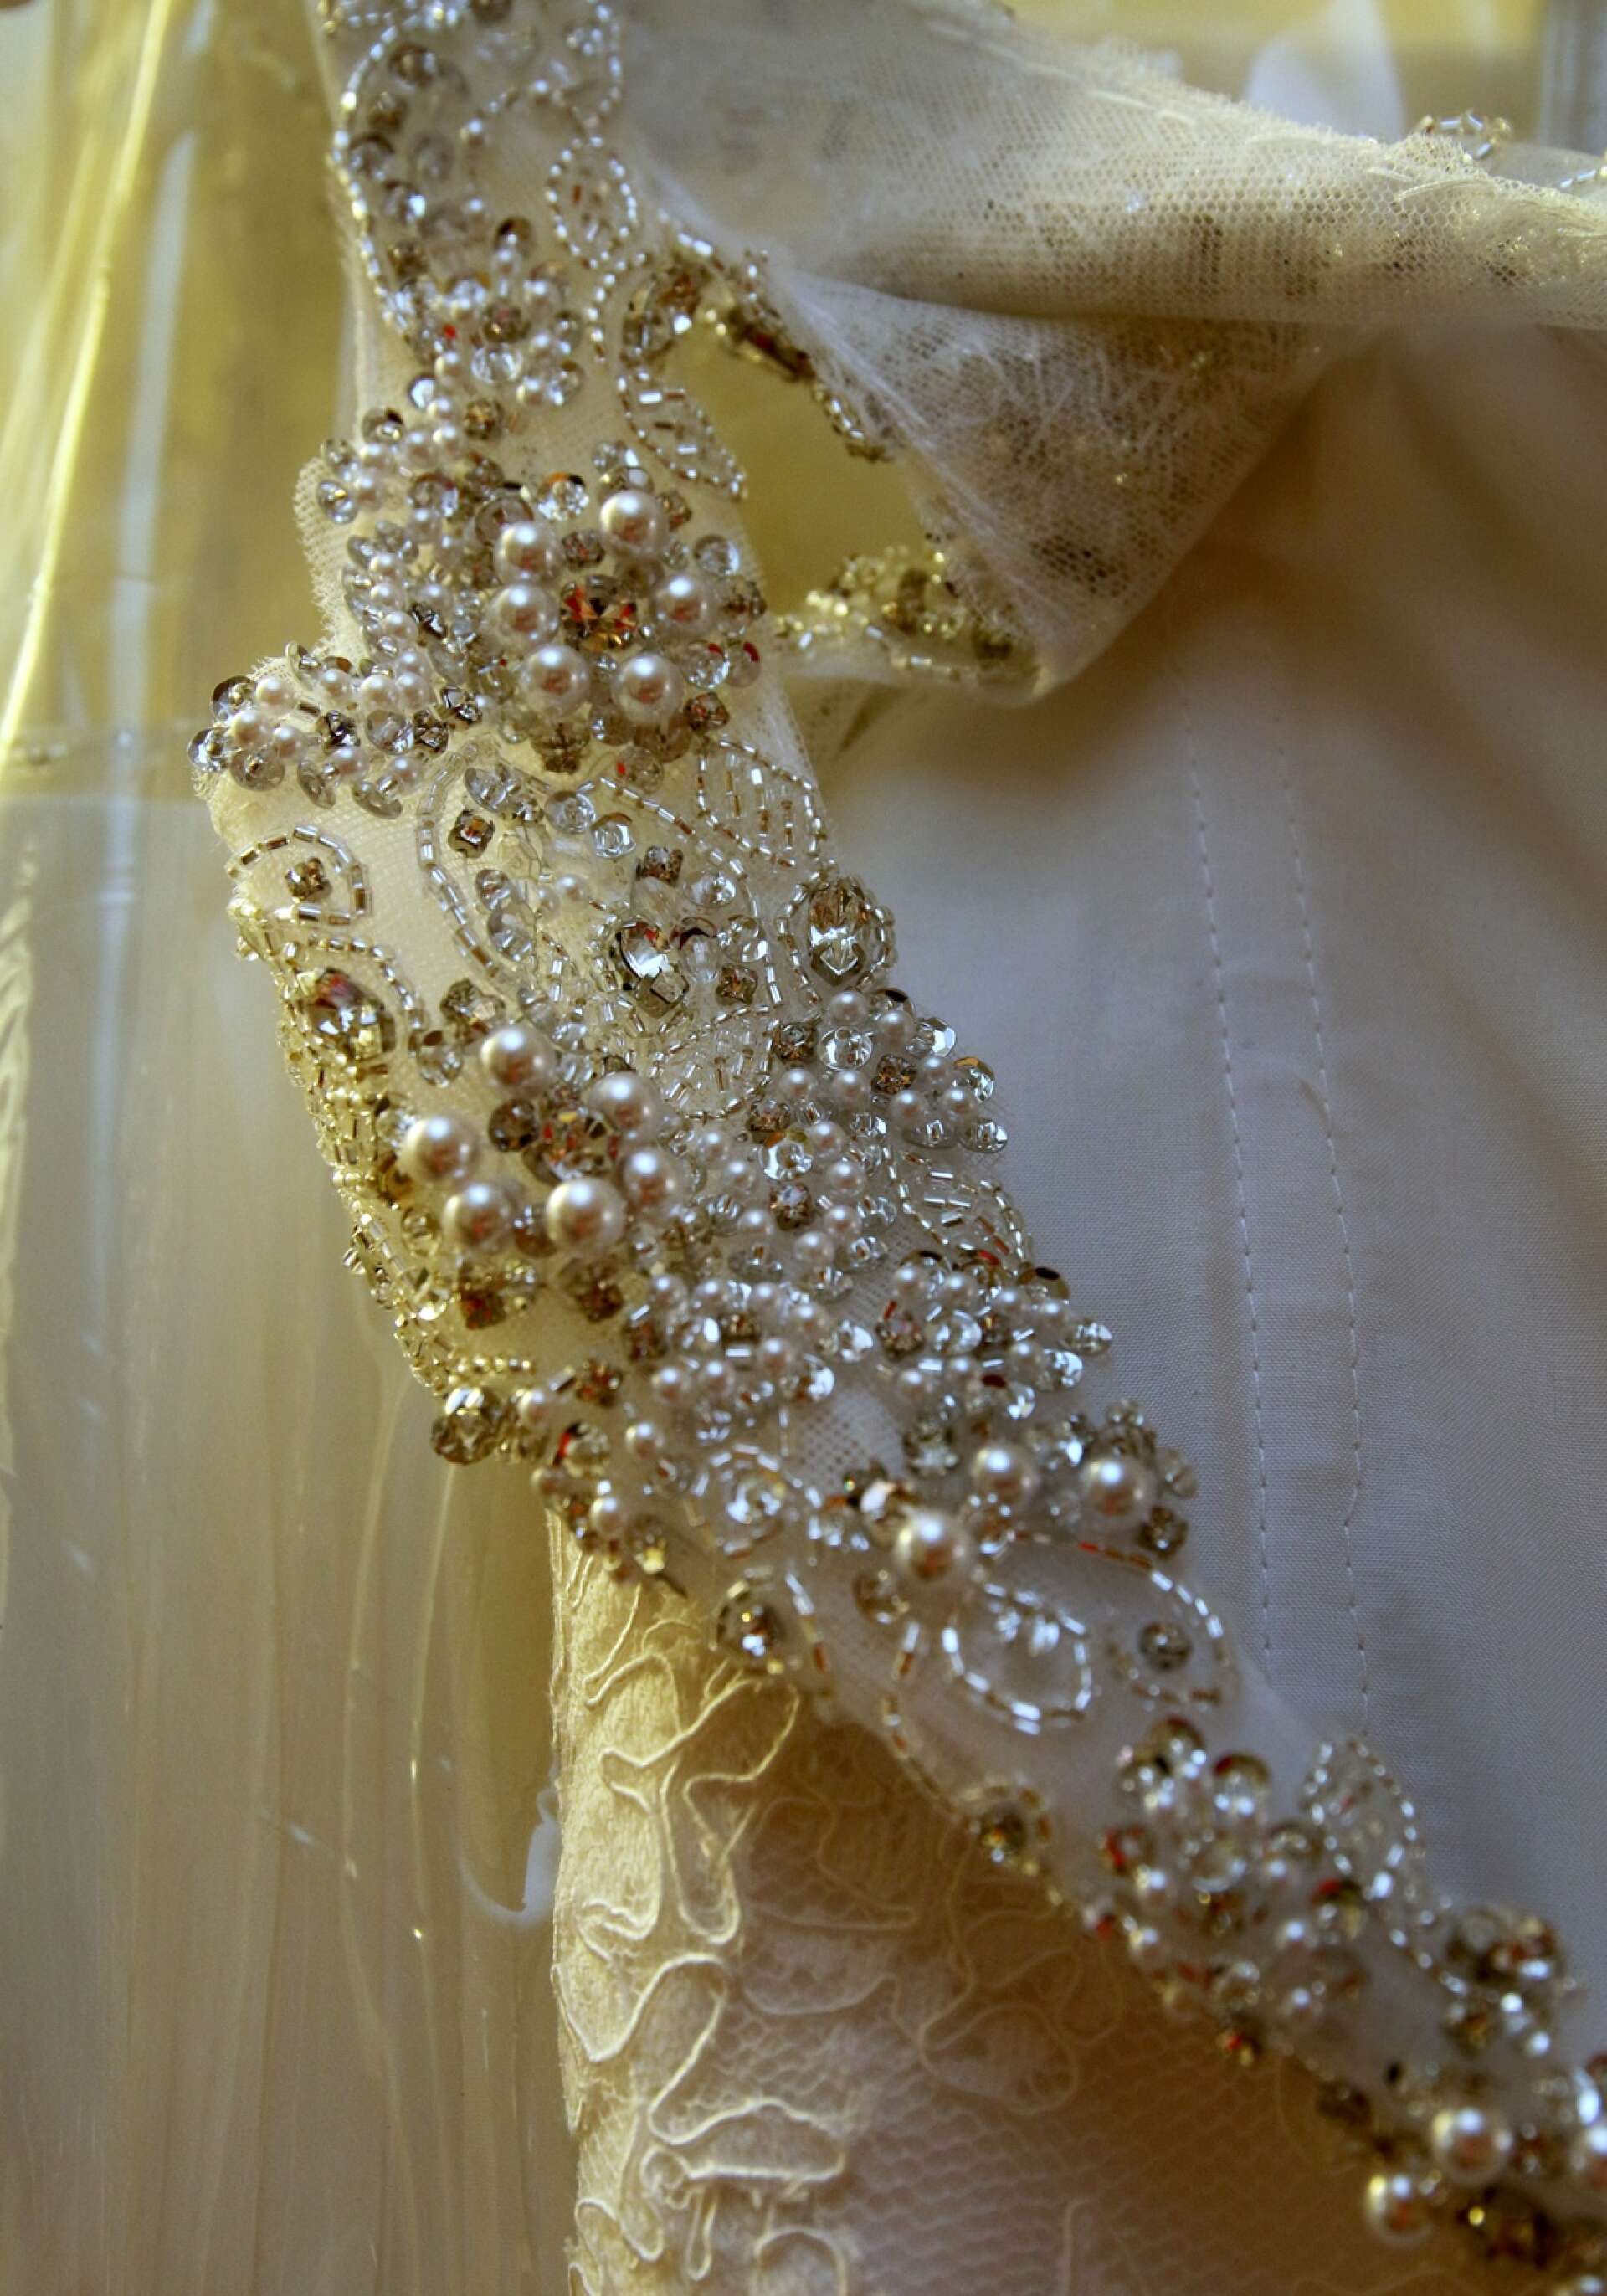 När det är många paljetter, kristaller och stenar insydda blir det svårare att göra ändringar på klänningen.